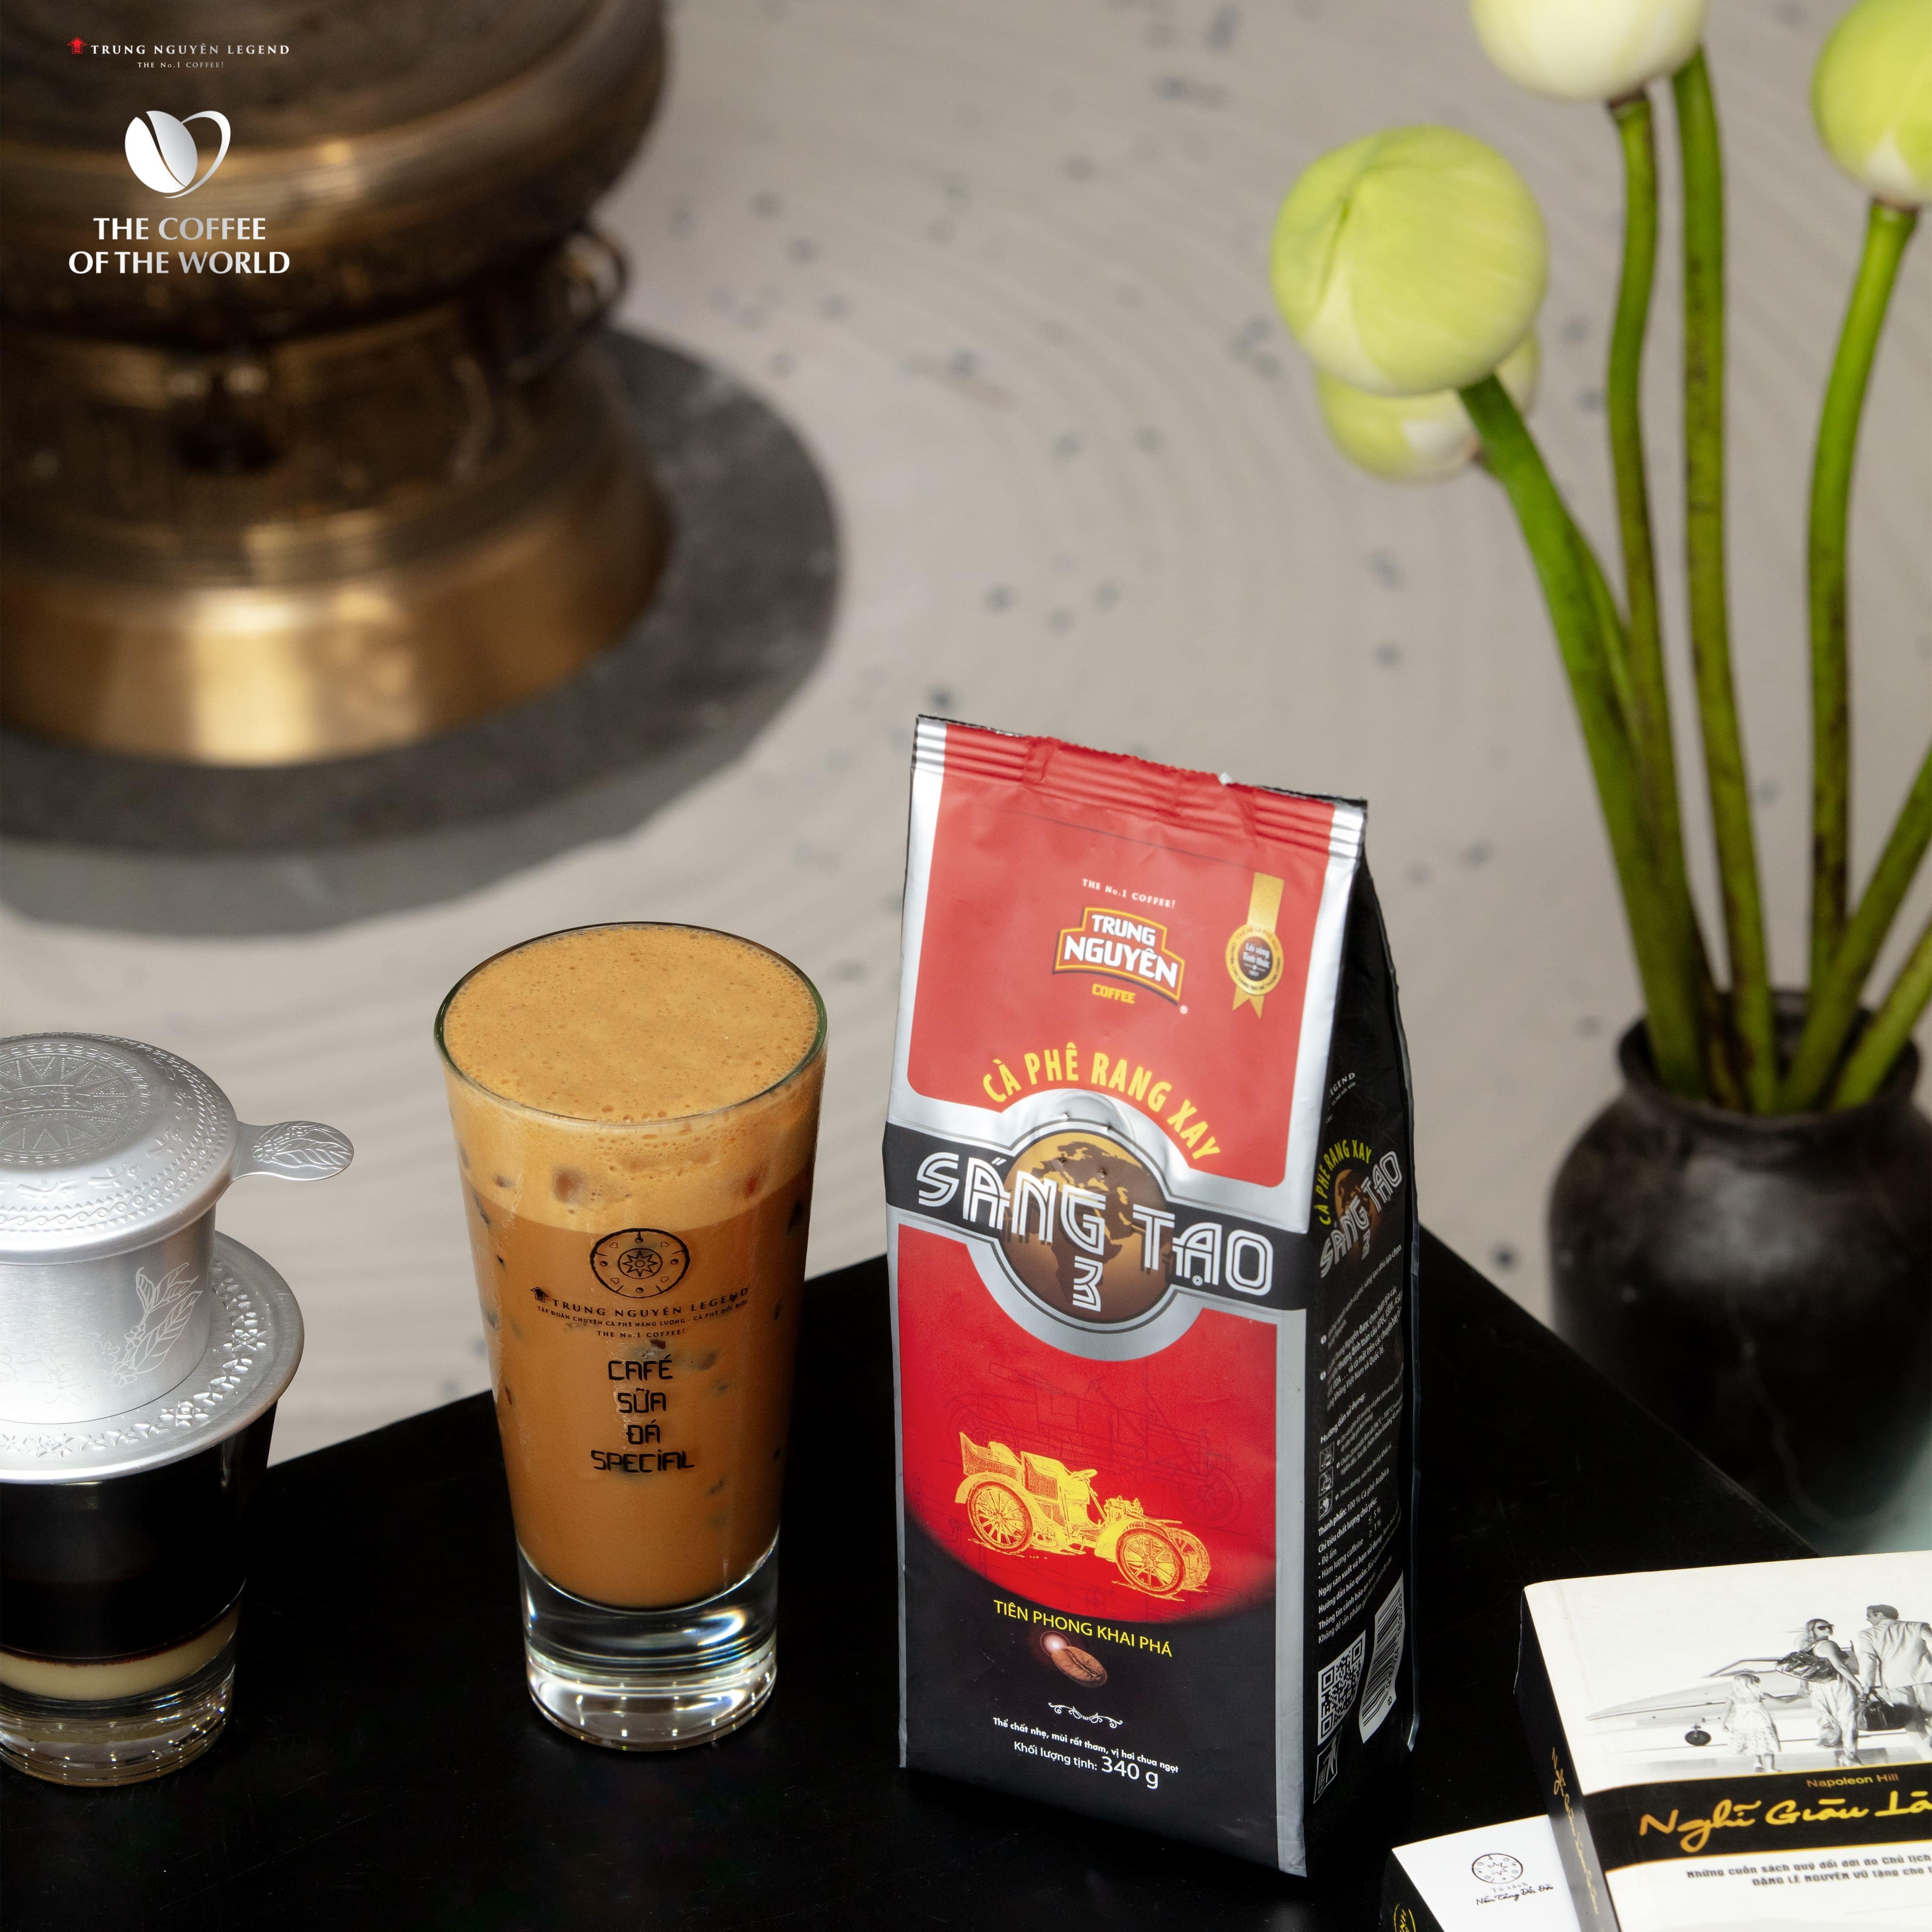 Trung Nguyên Legend - Cà phê rang xay Sáng tạo 3 - Bịch 340gr